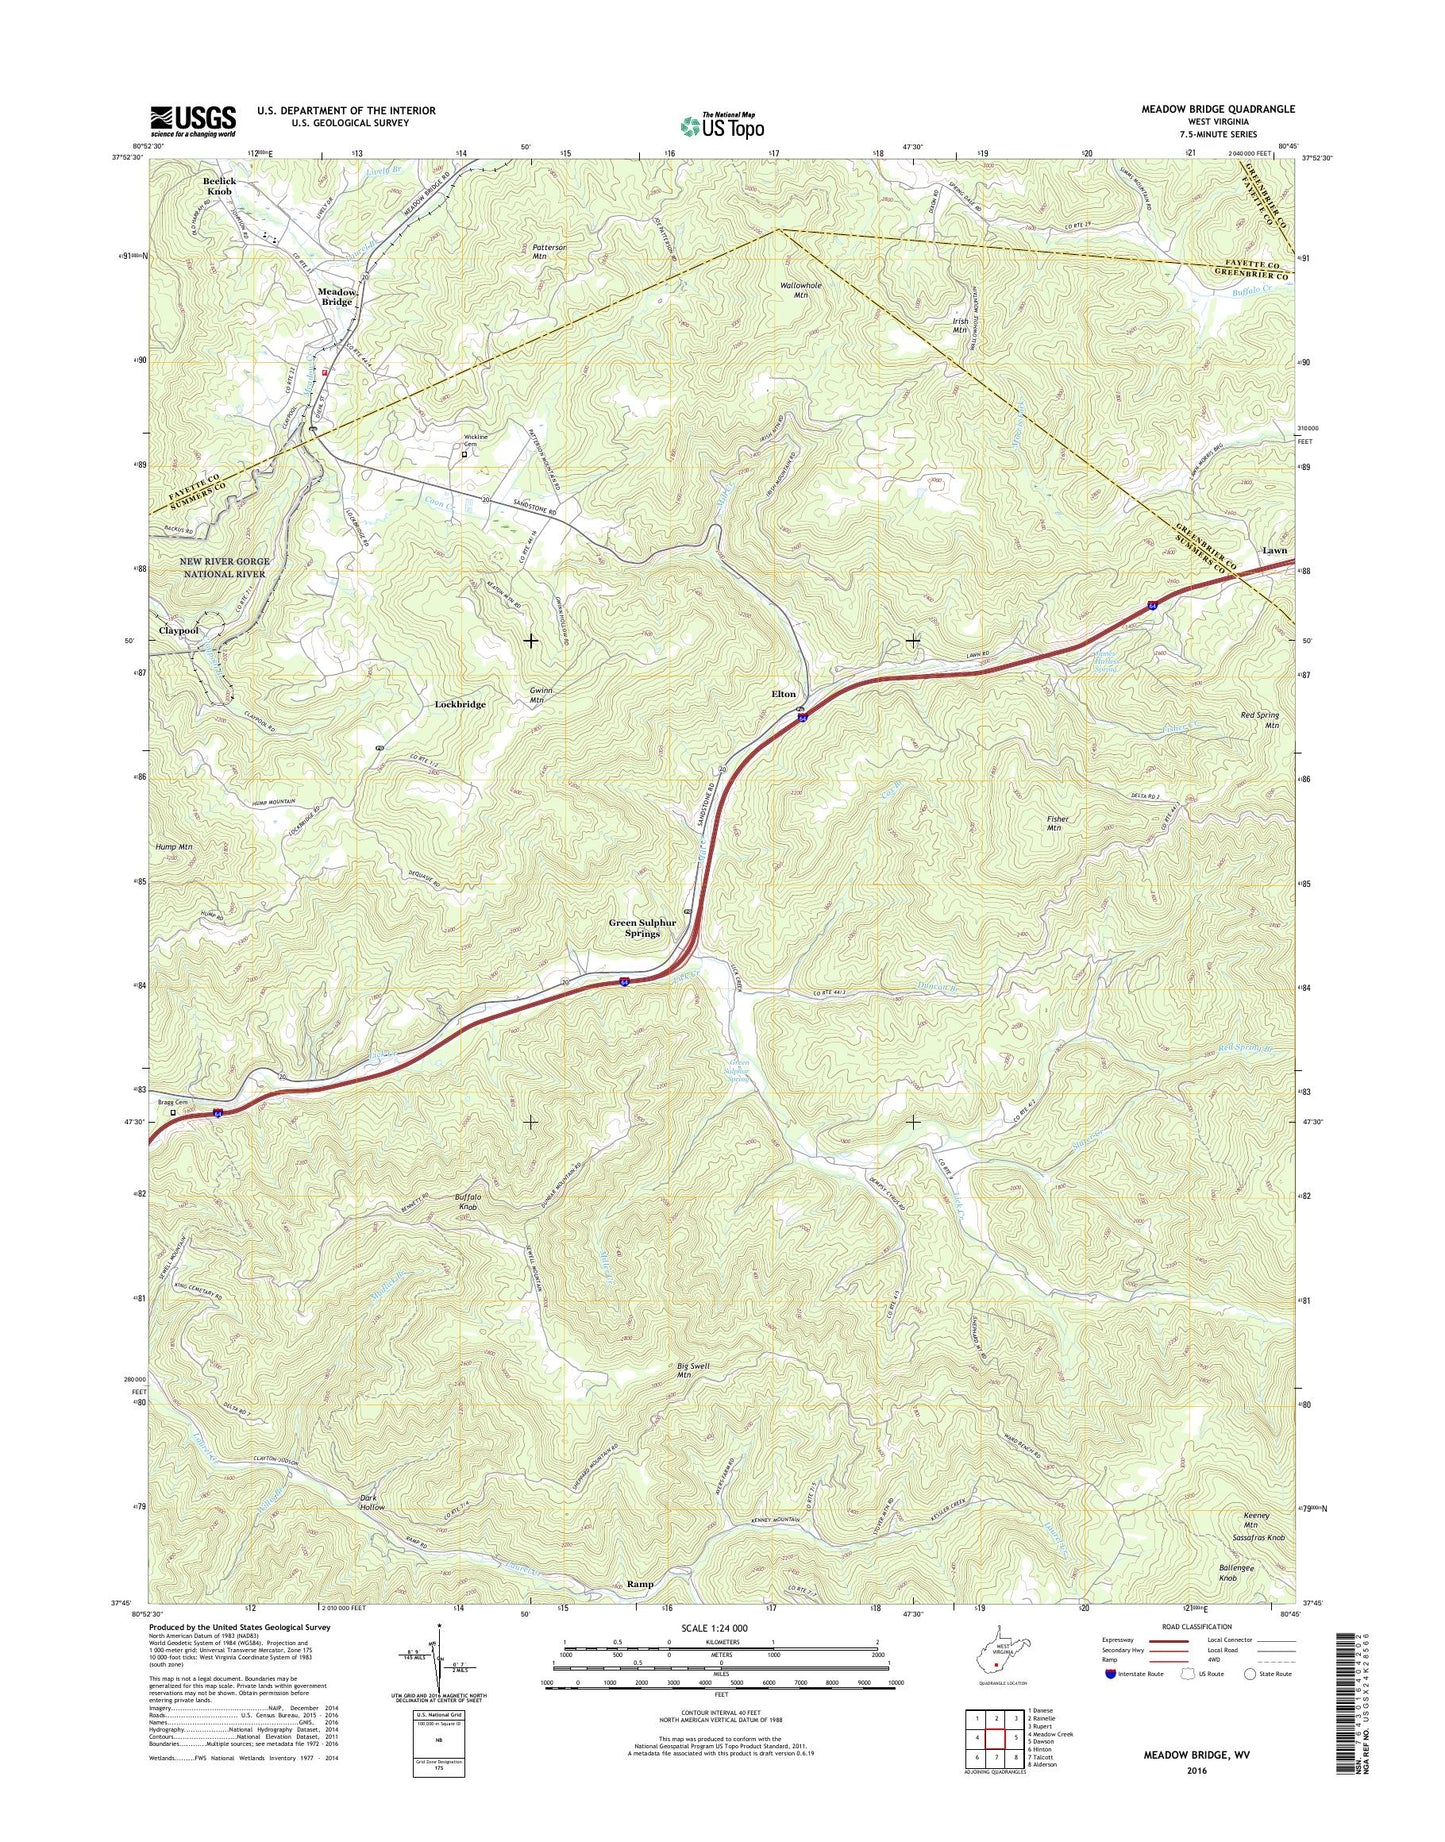 Meadow Bridge West Virginia US Topo Map Image